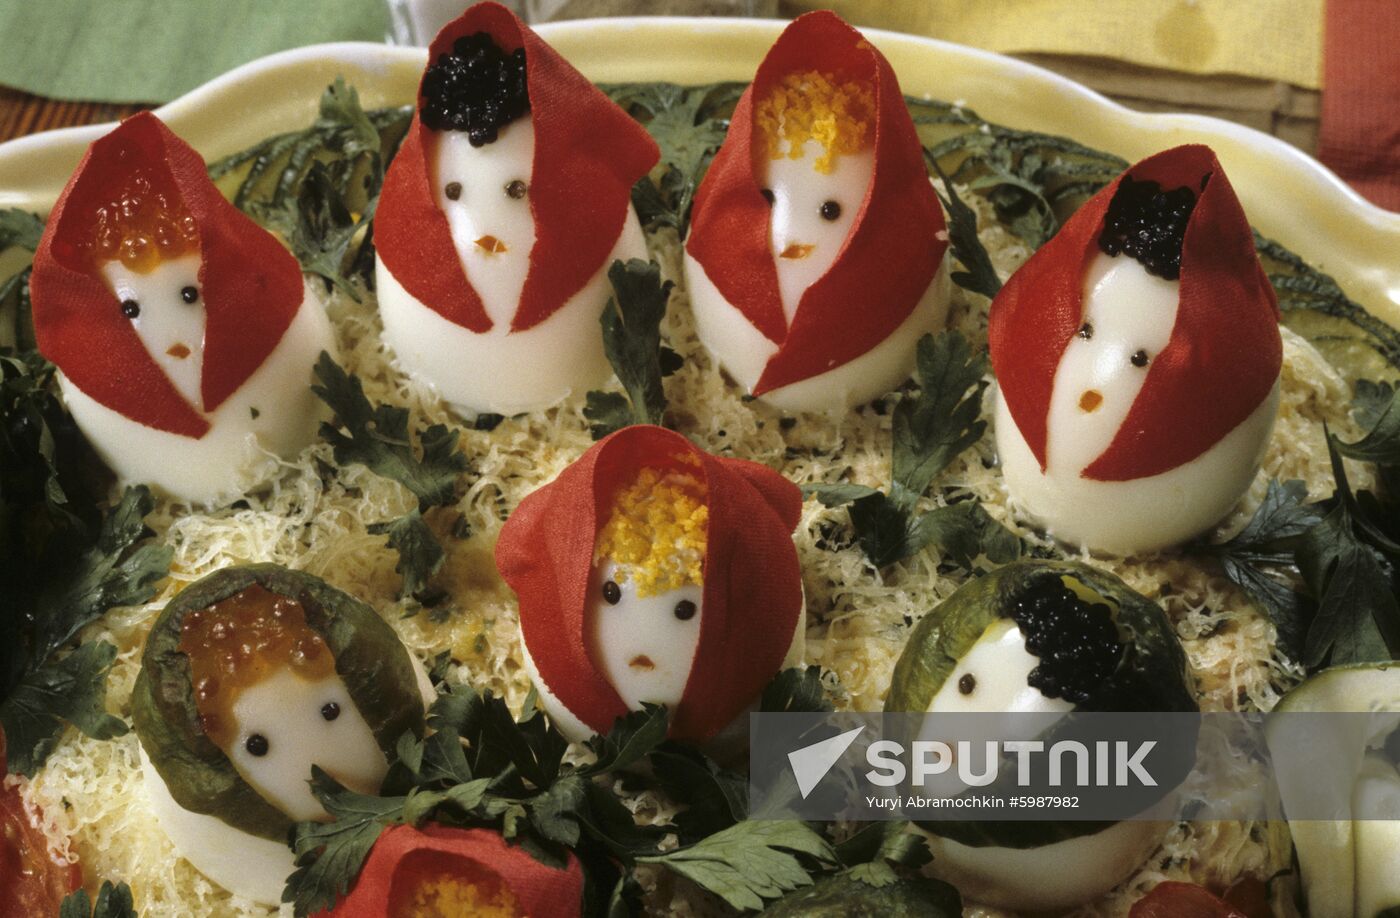 Russian Dolls salad